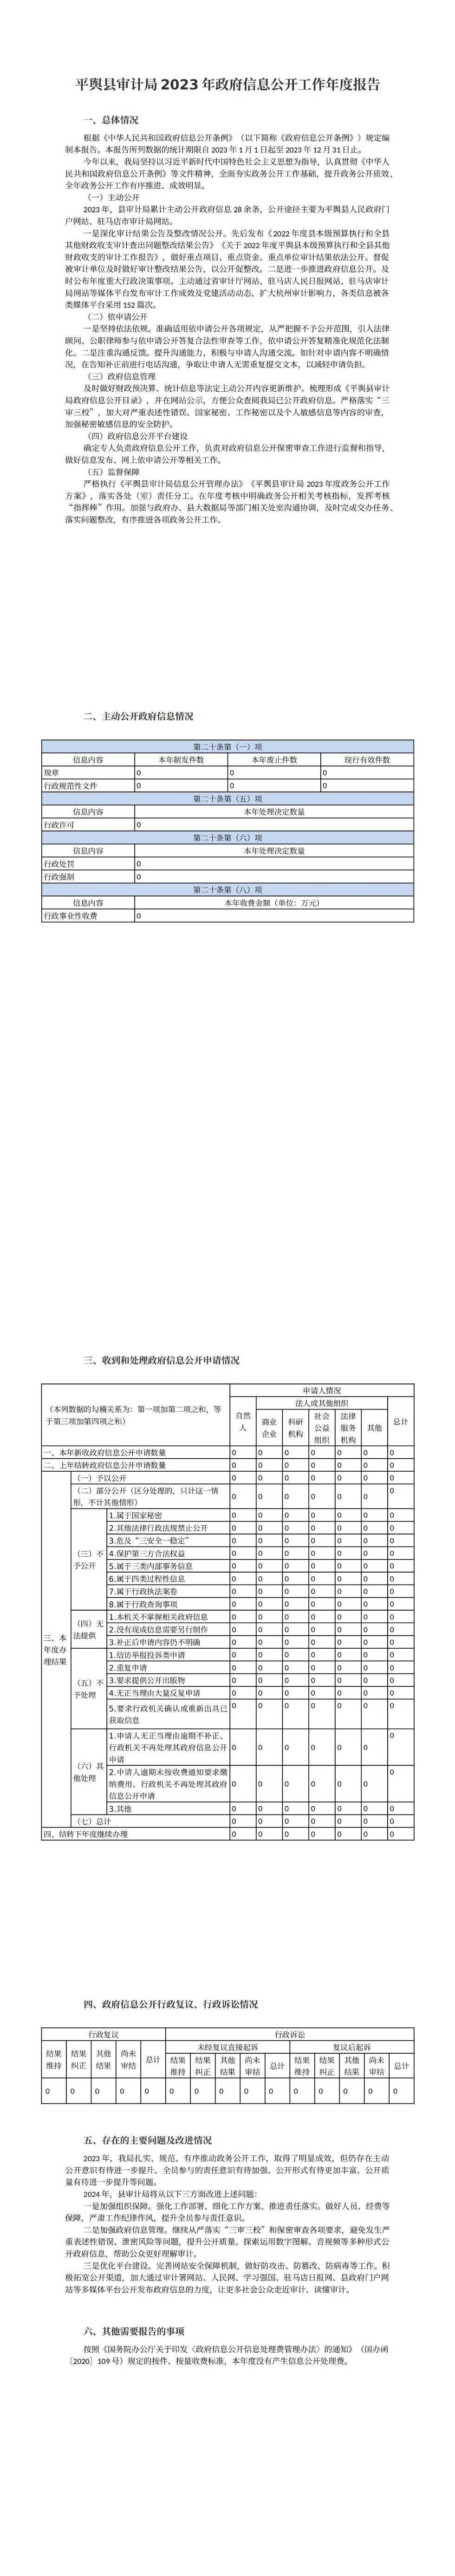 平舆县审计局2023年政府信息公开工作年度报告_00.jpg